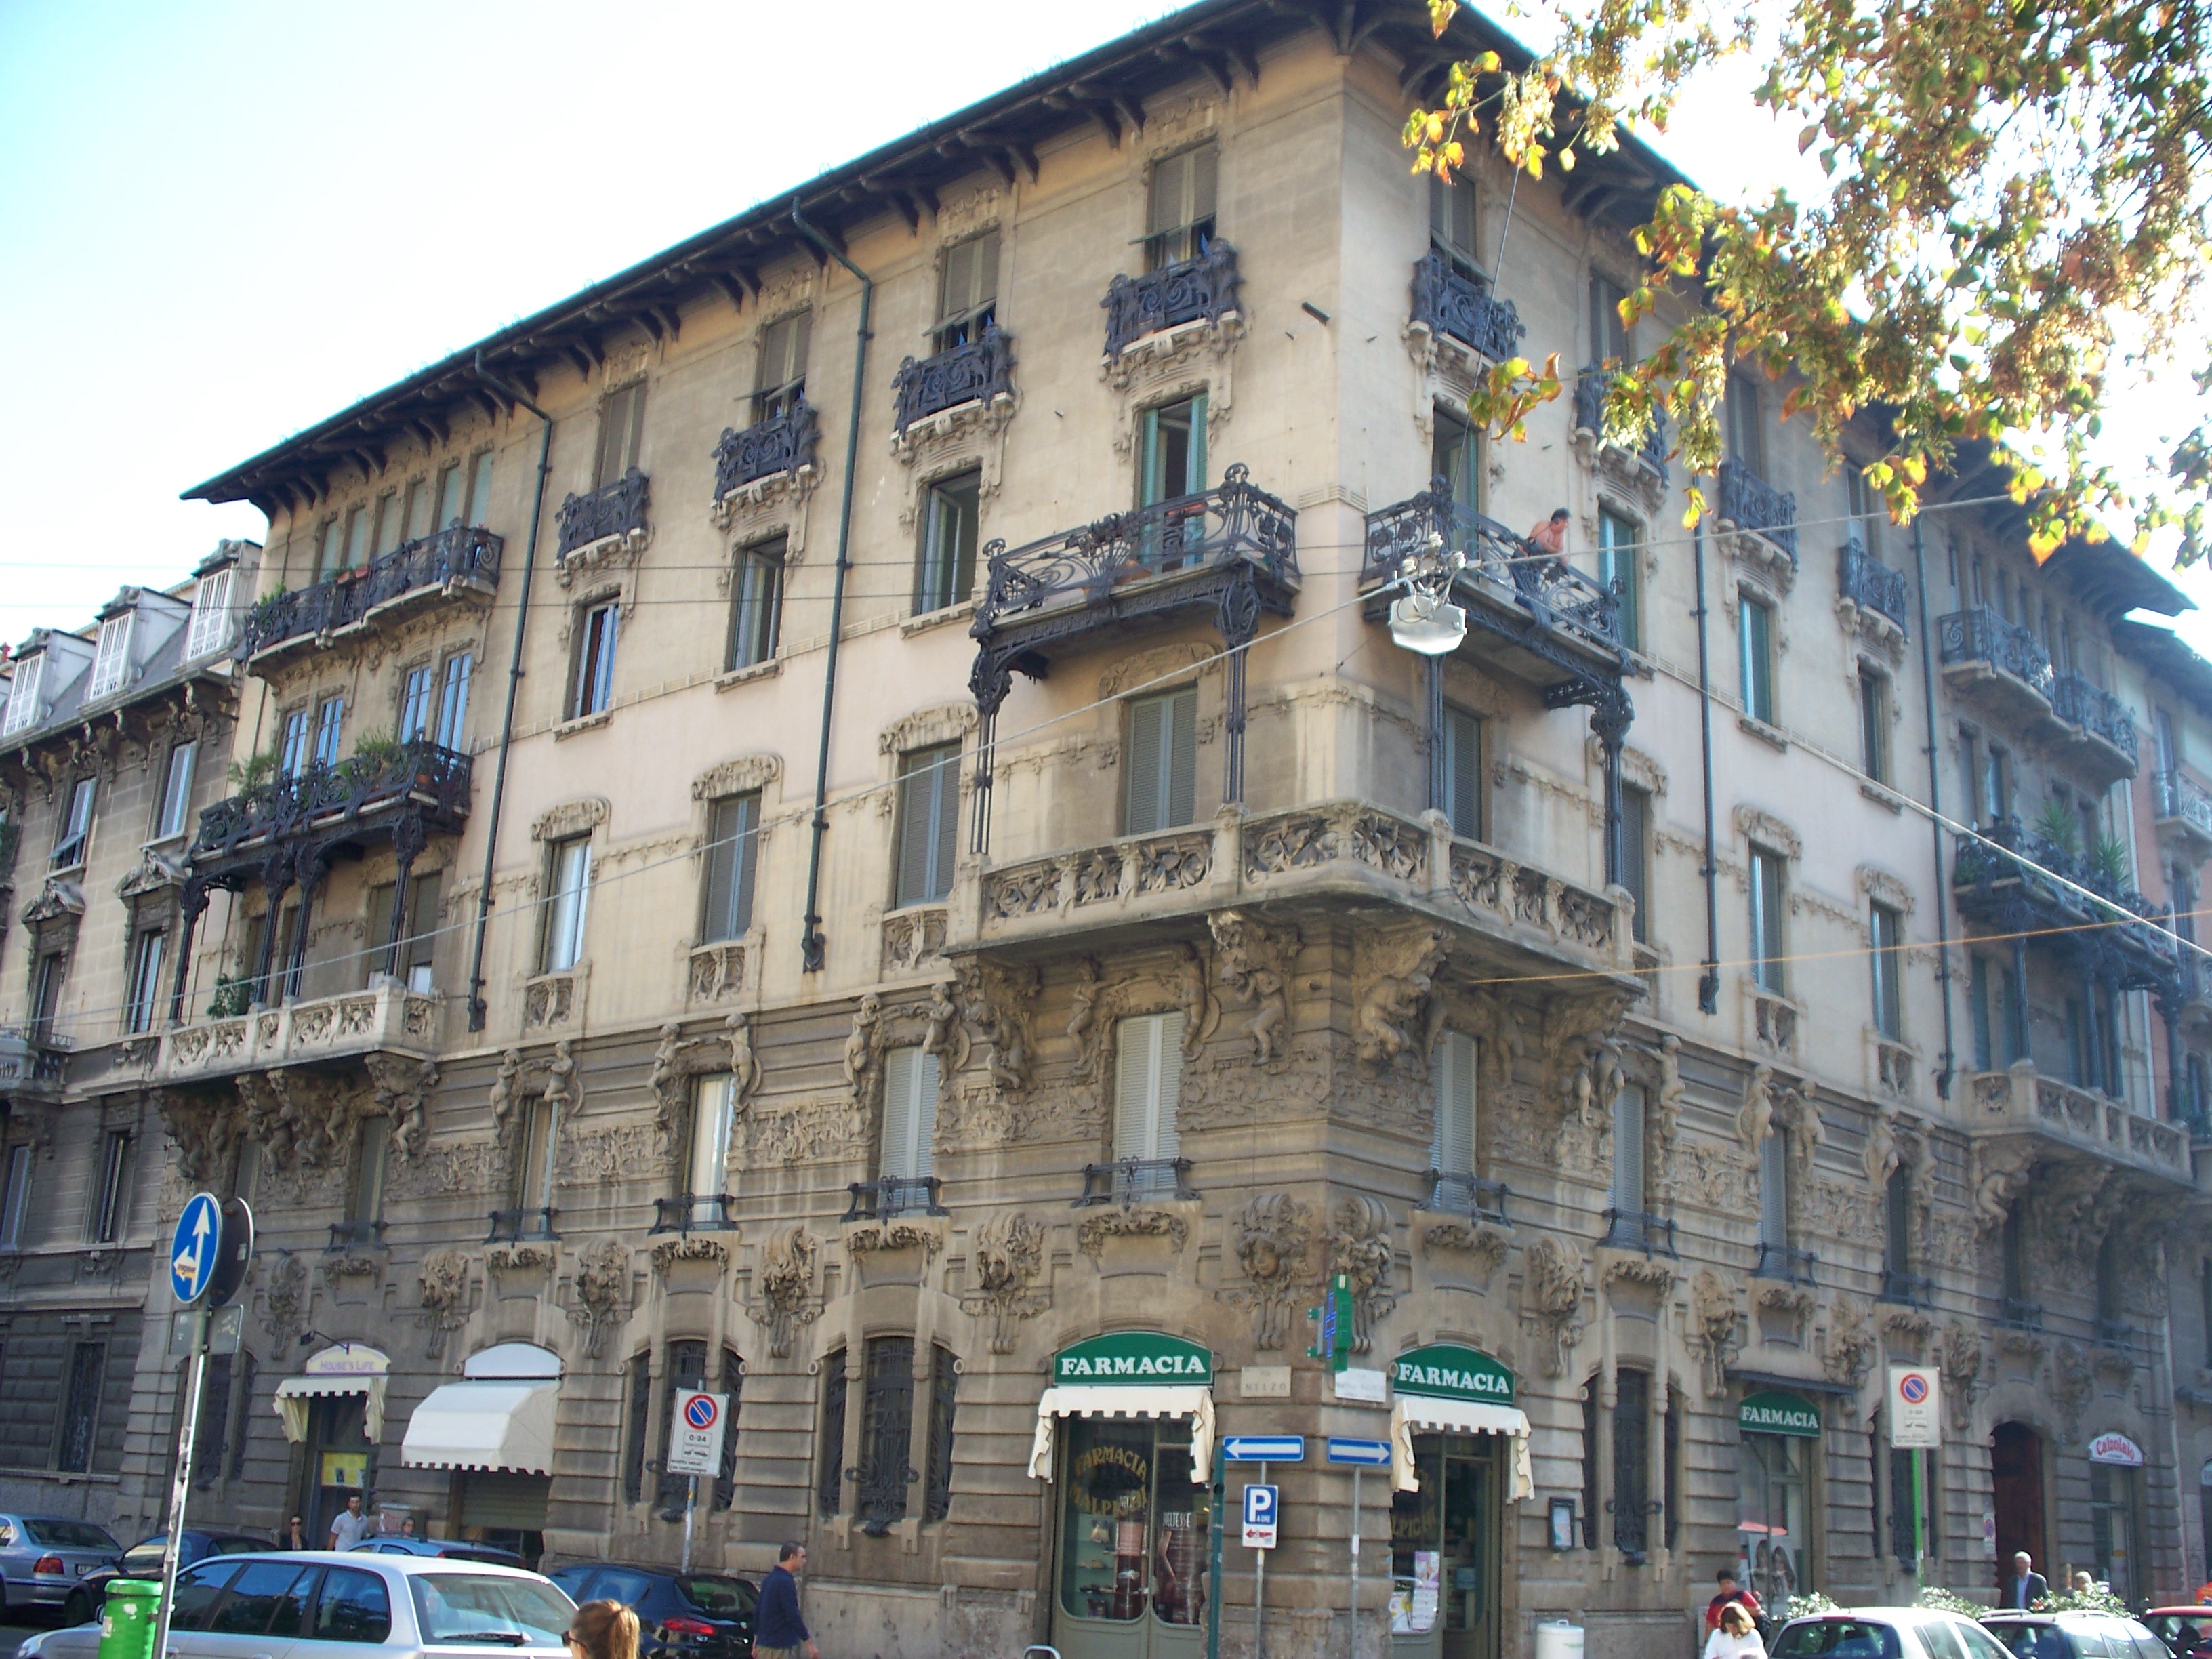 Casa Galimberti e casa Guazzoni